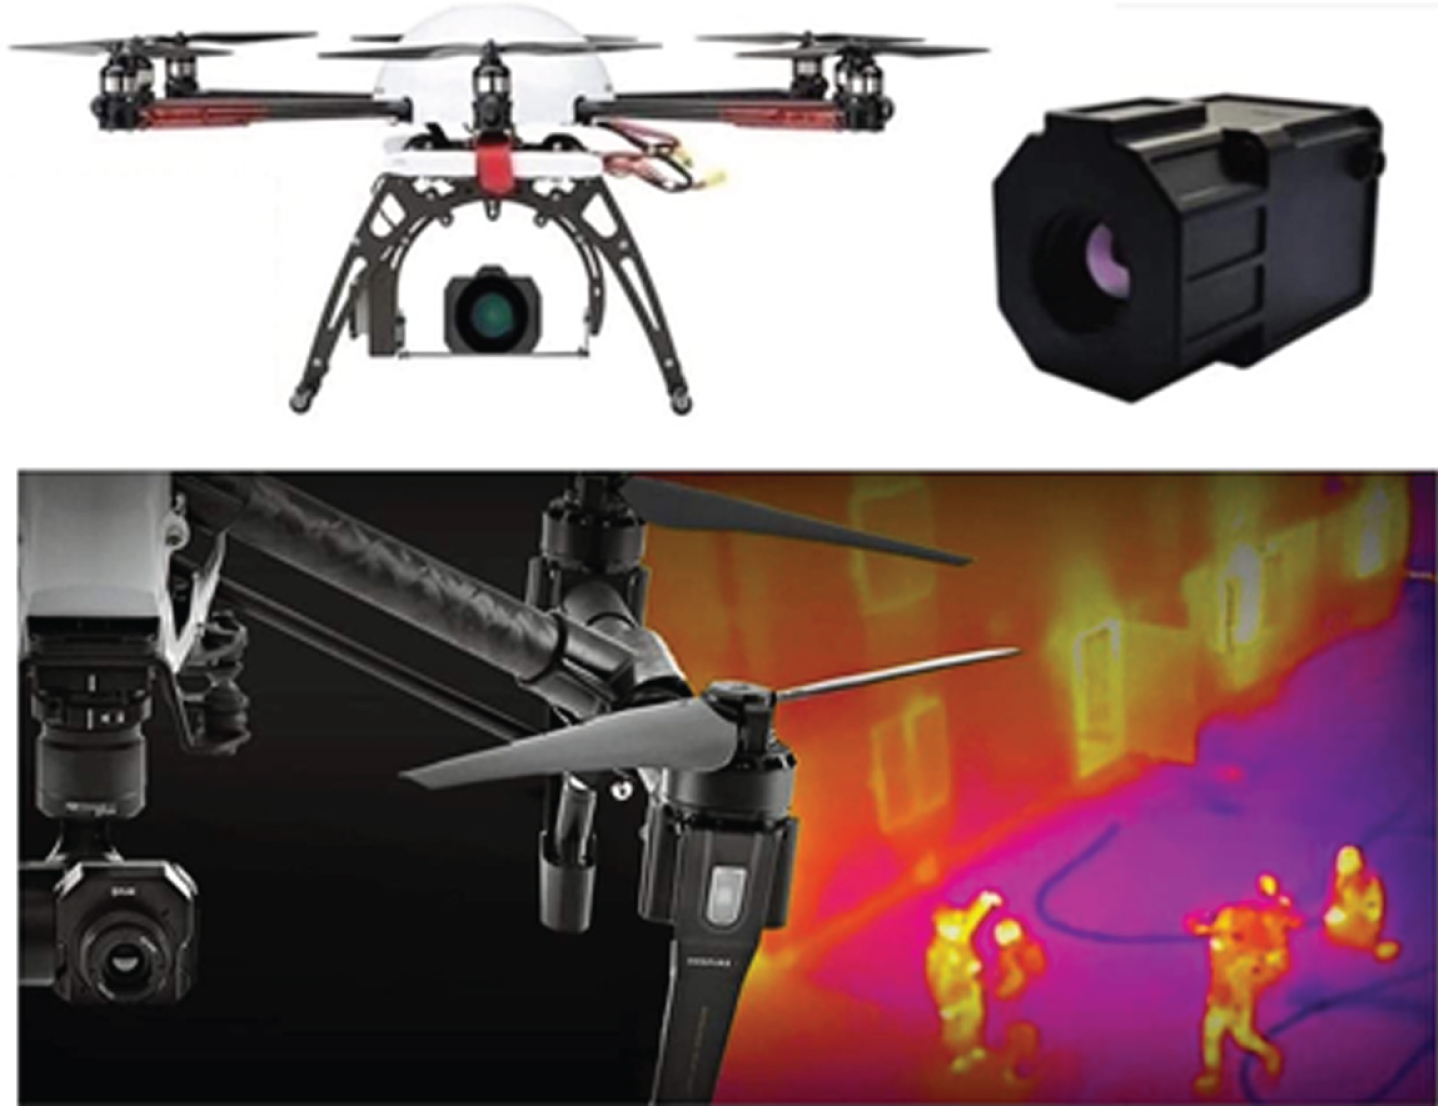 Examples of multi-purpose drones.